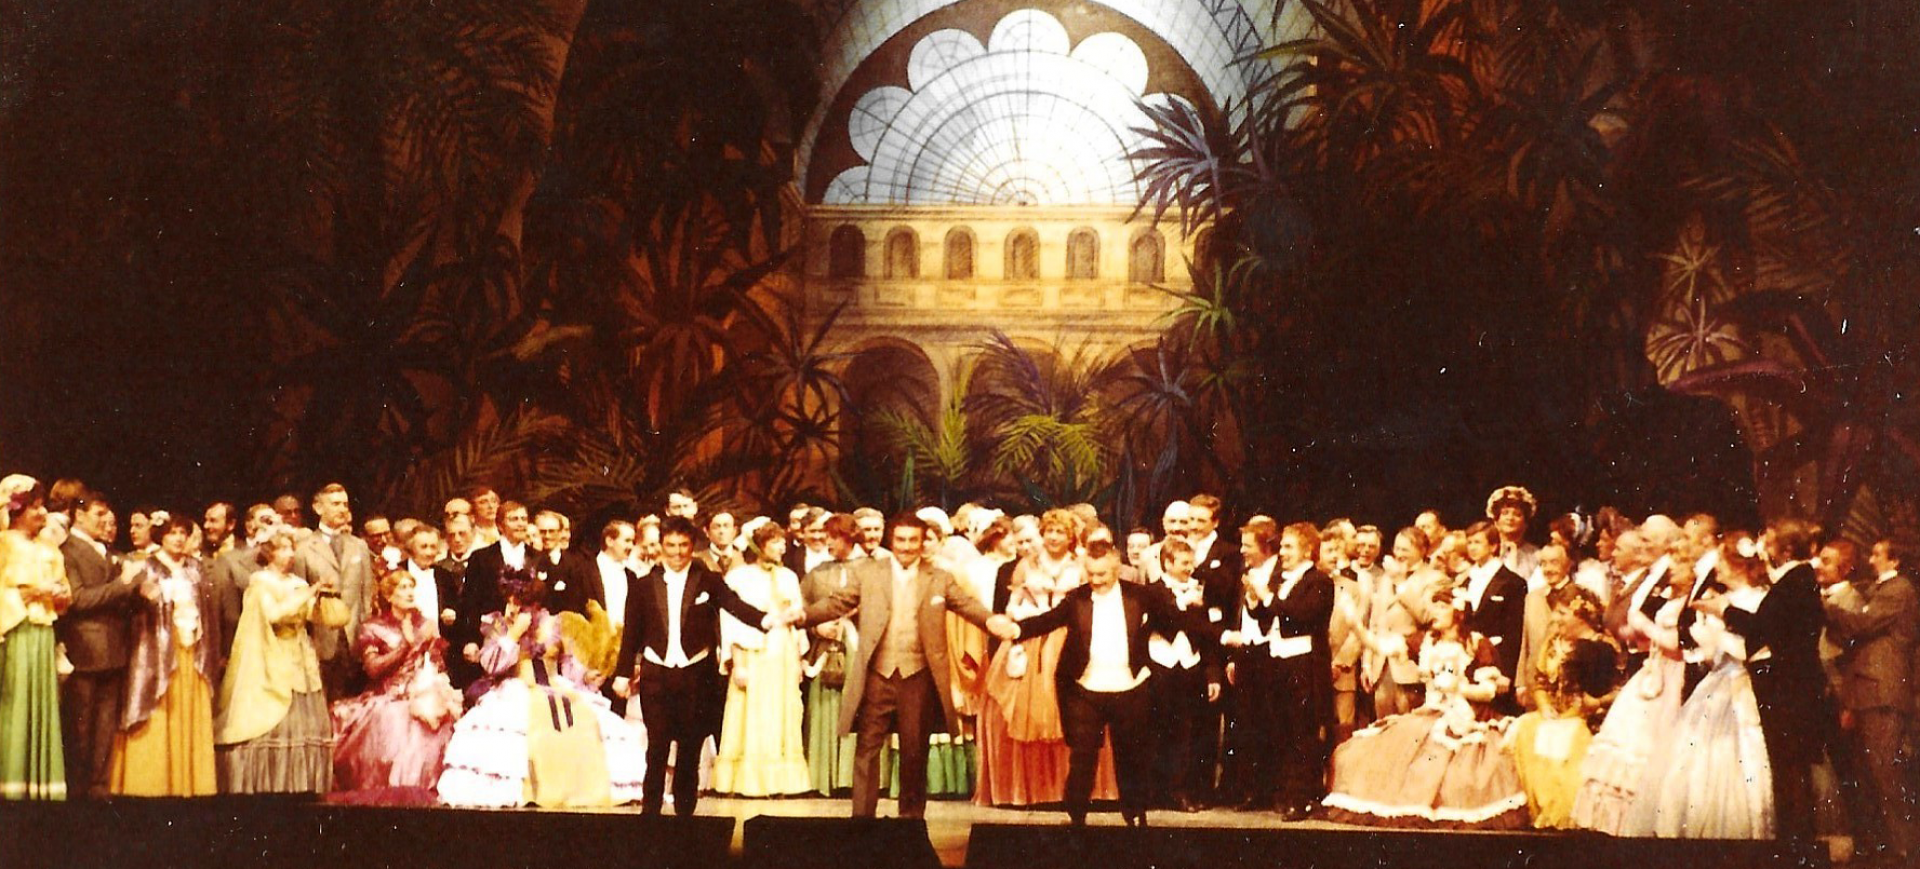 Krach en d´r Schelderjass - Divertissementchen 1982 - Großer Chor beim Schlussapplaus